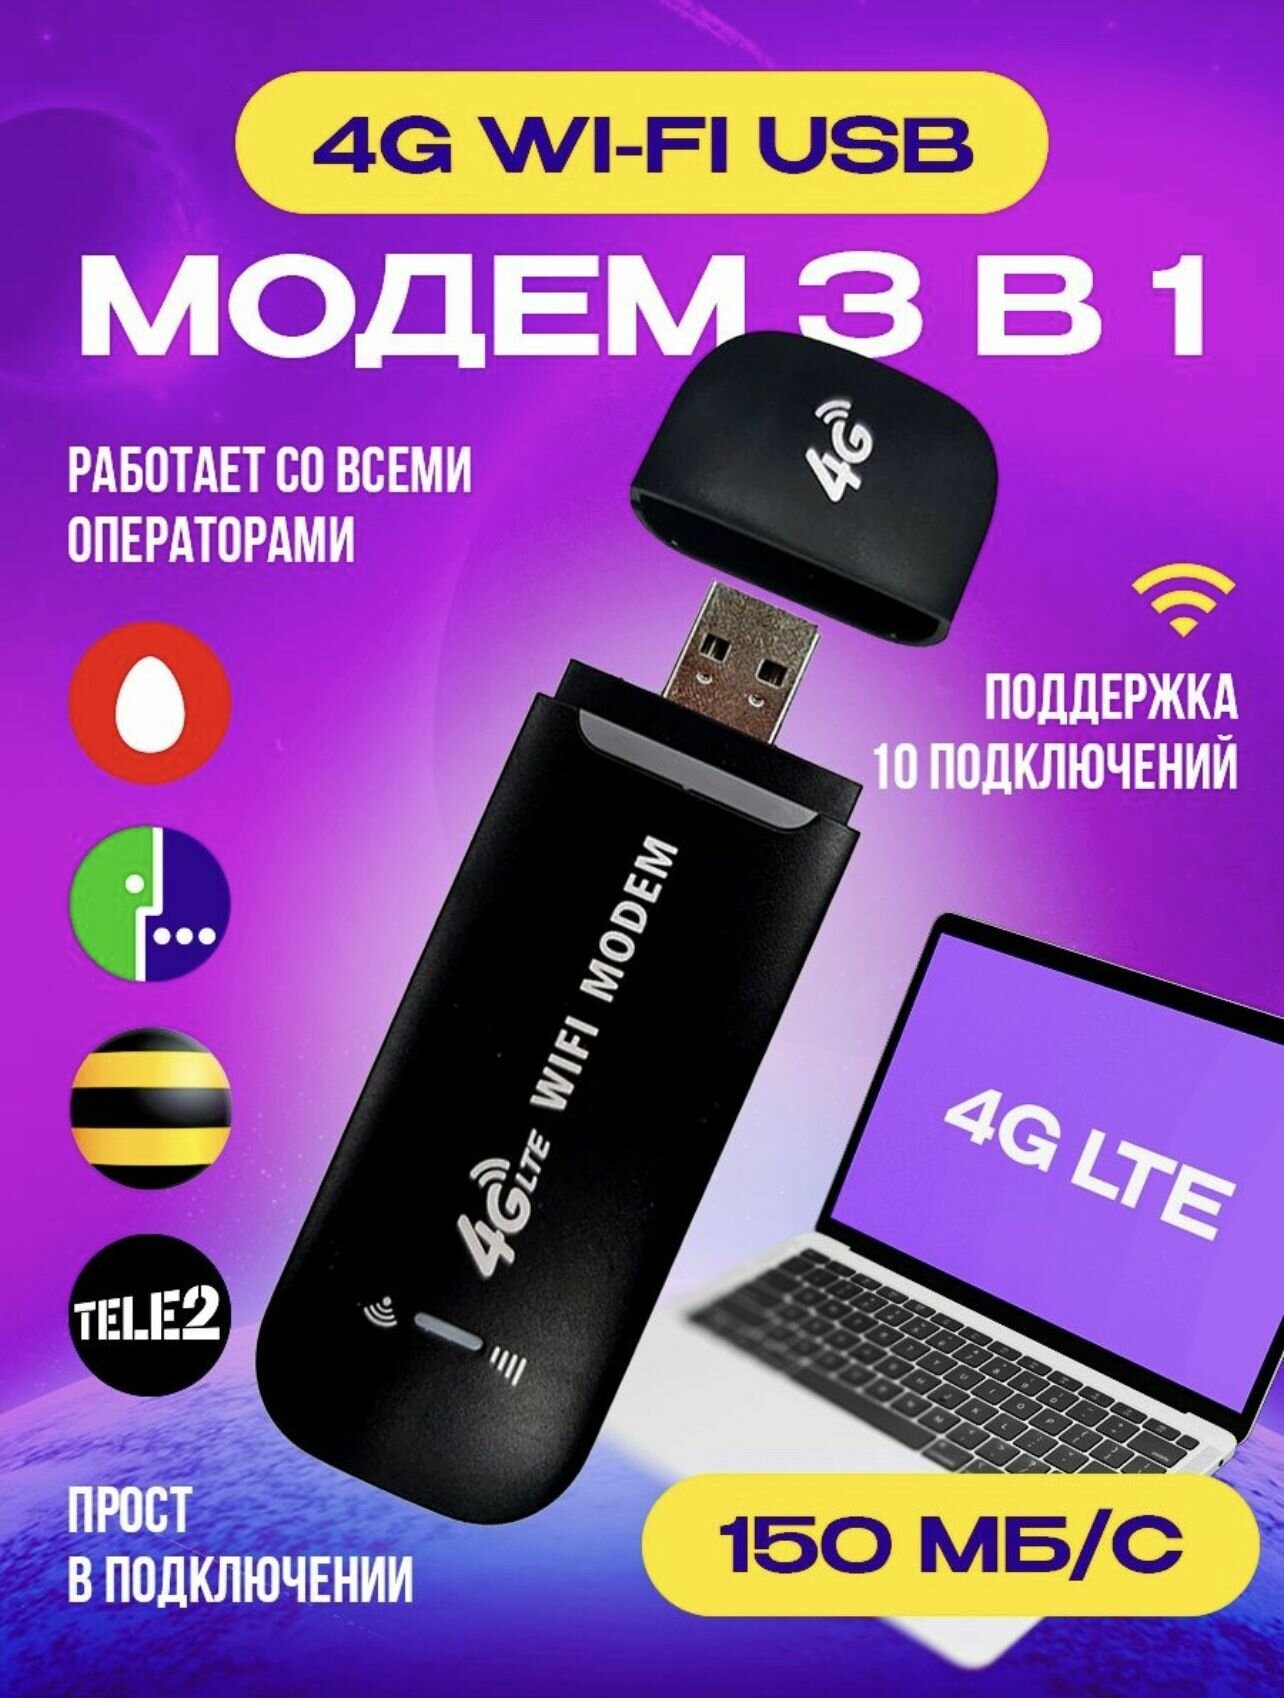 4g Модем Wifi + Сим карта в подарок-black. Модем работает с любым сотовым оператором России, Крыма, СНГ.